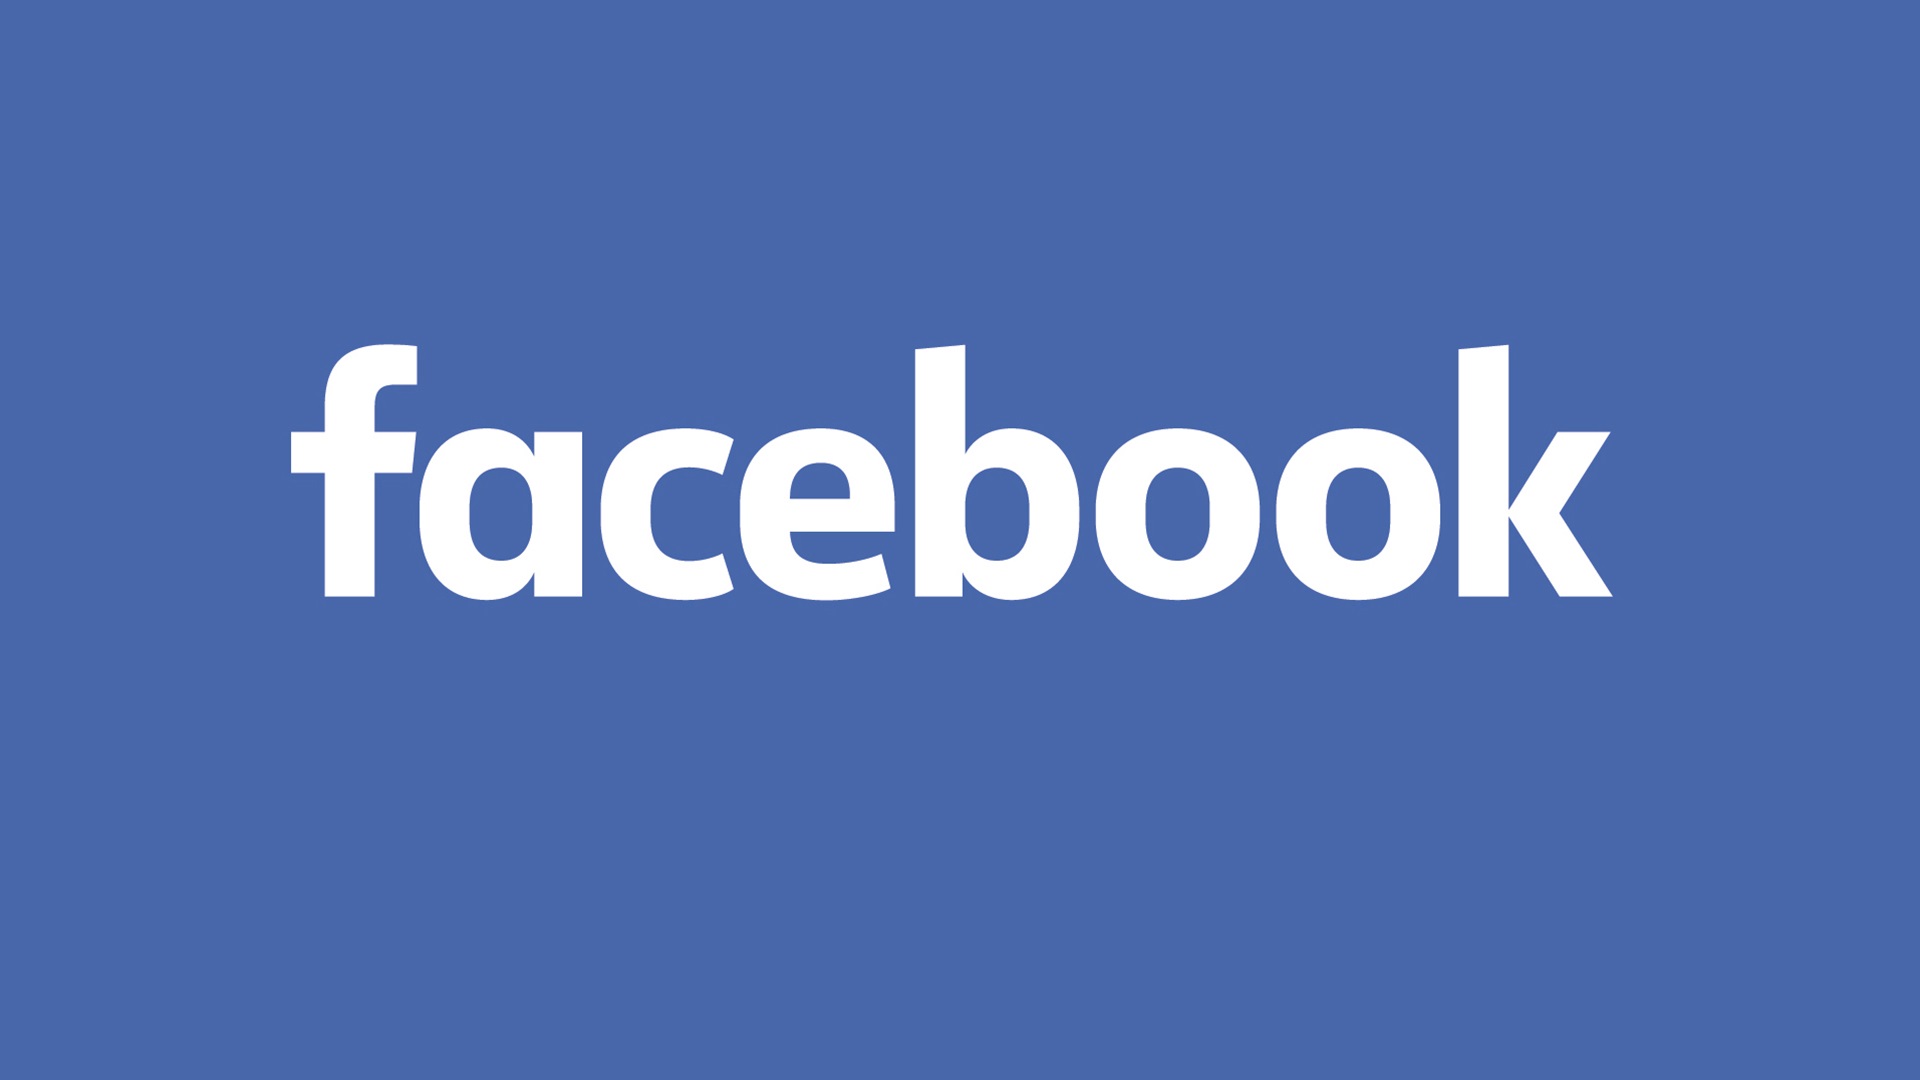 Σύντομα θα μπορείτε να διαγράψετε όσα ξέρει το Facebook για εσάς